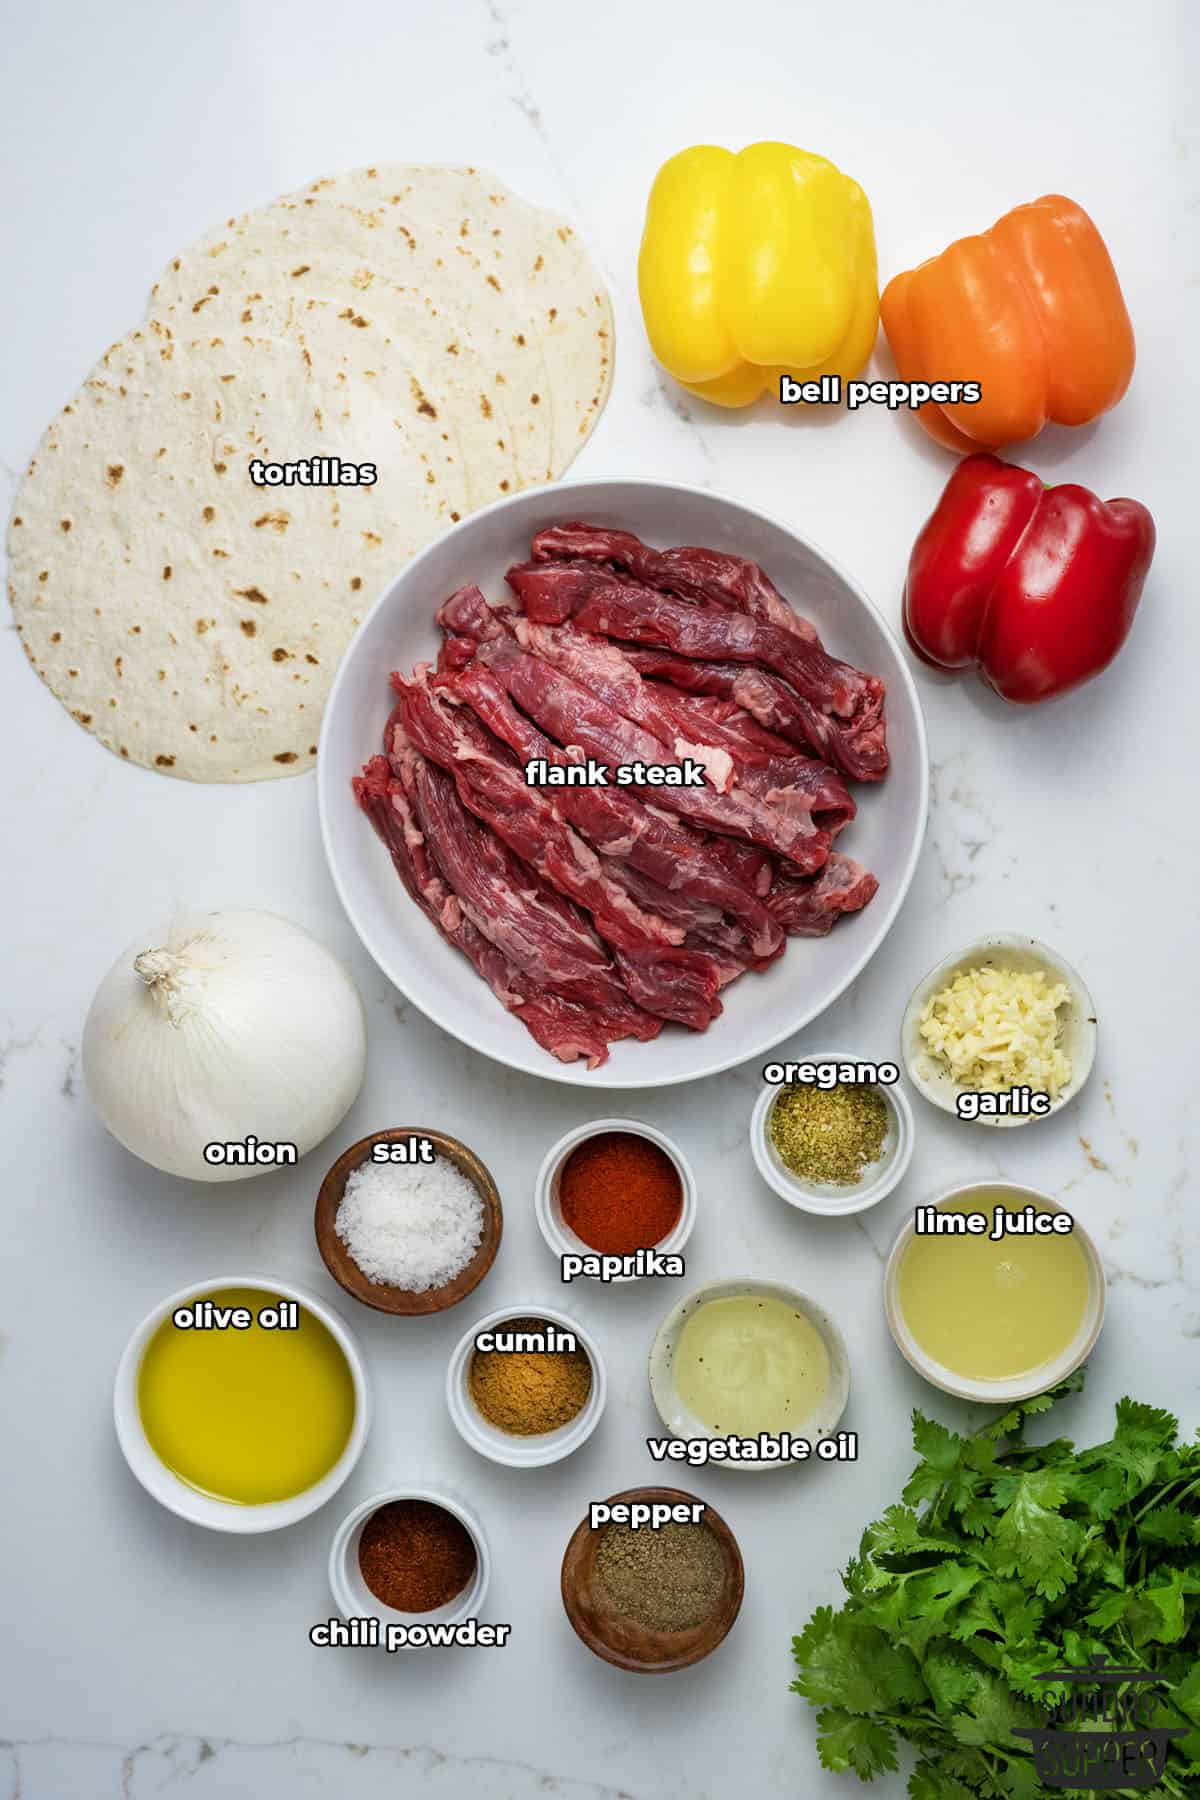 steak fajitas ingredients